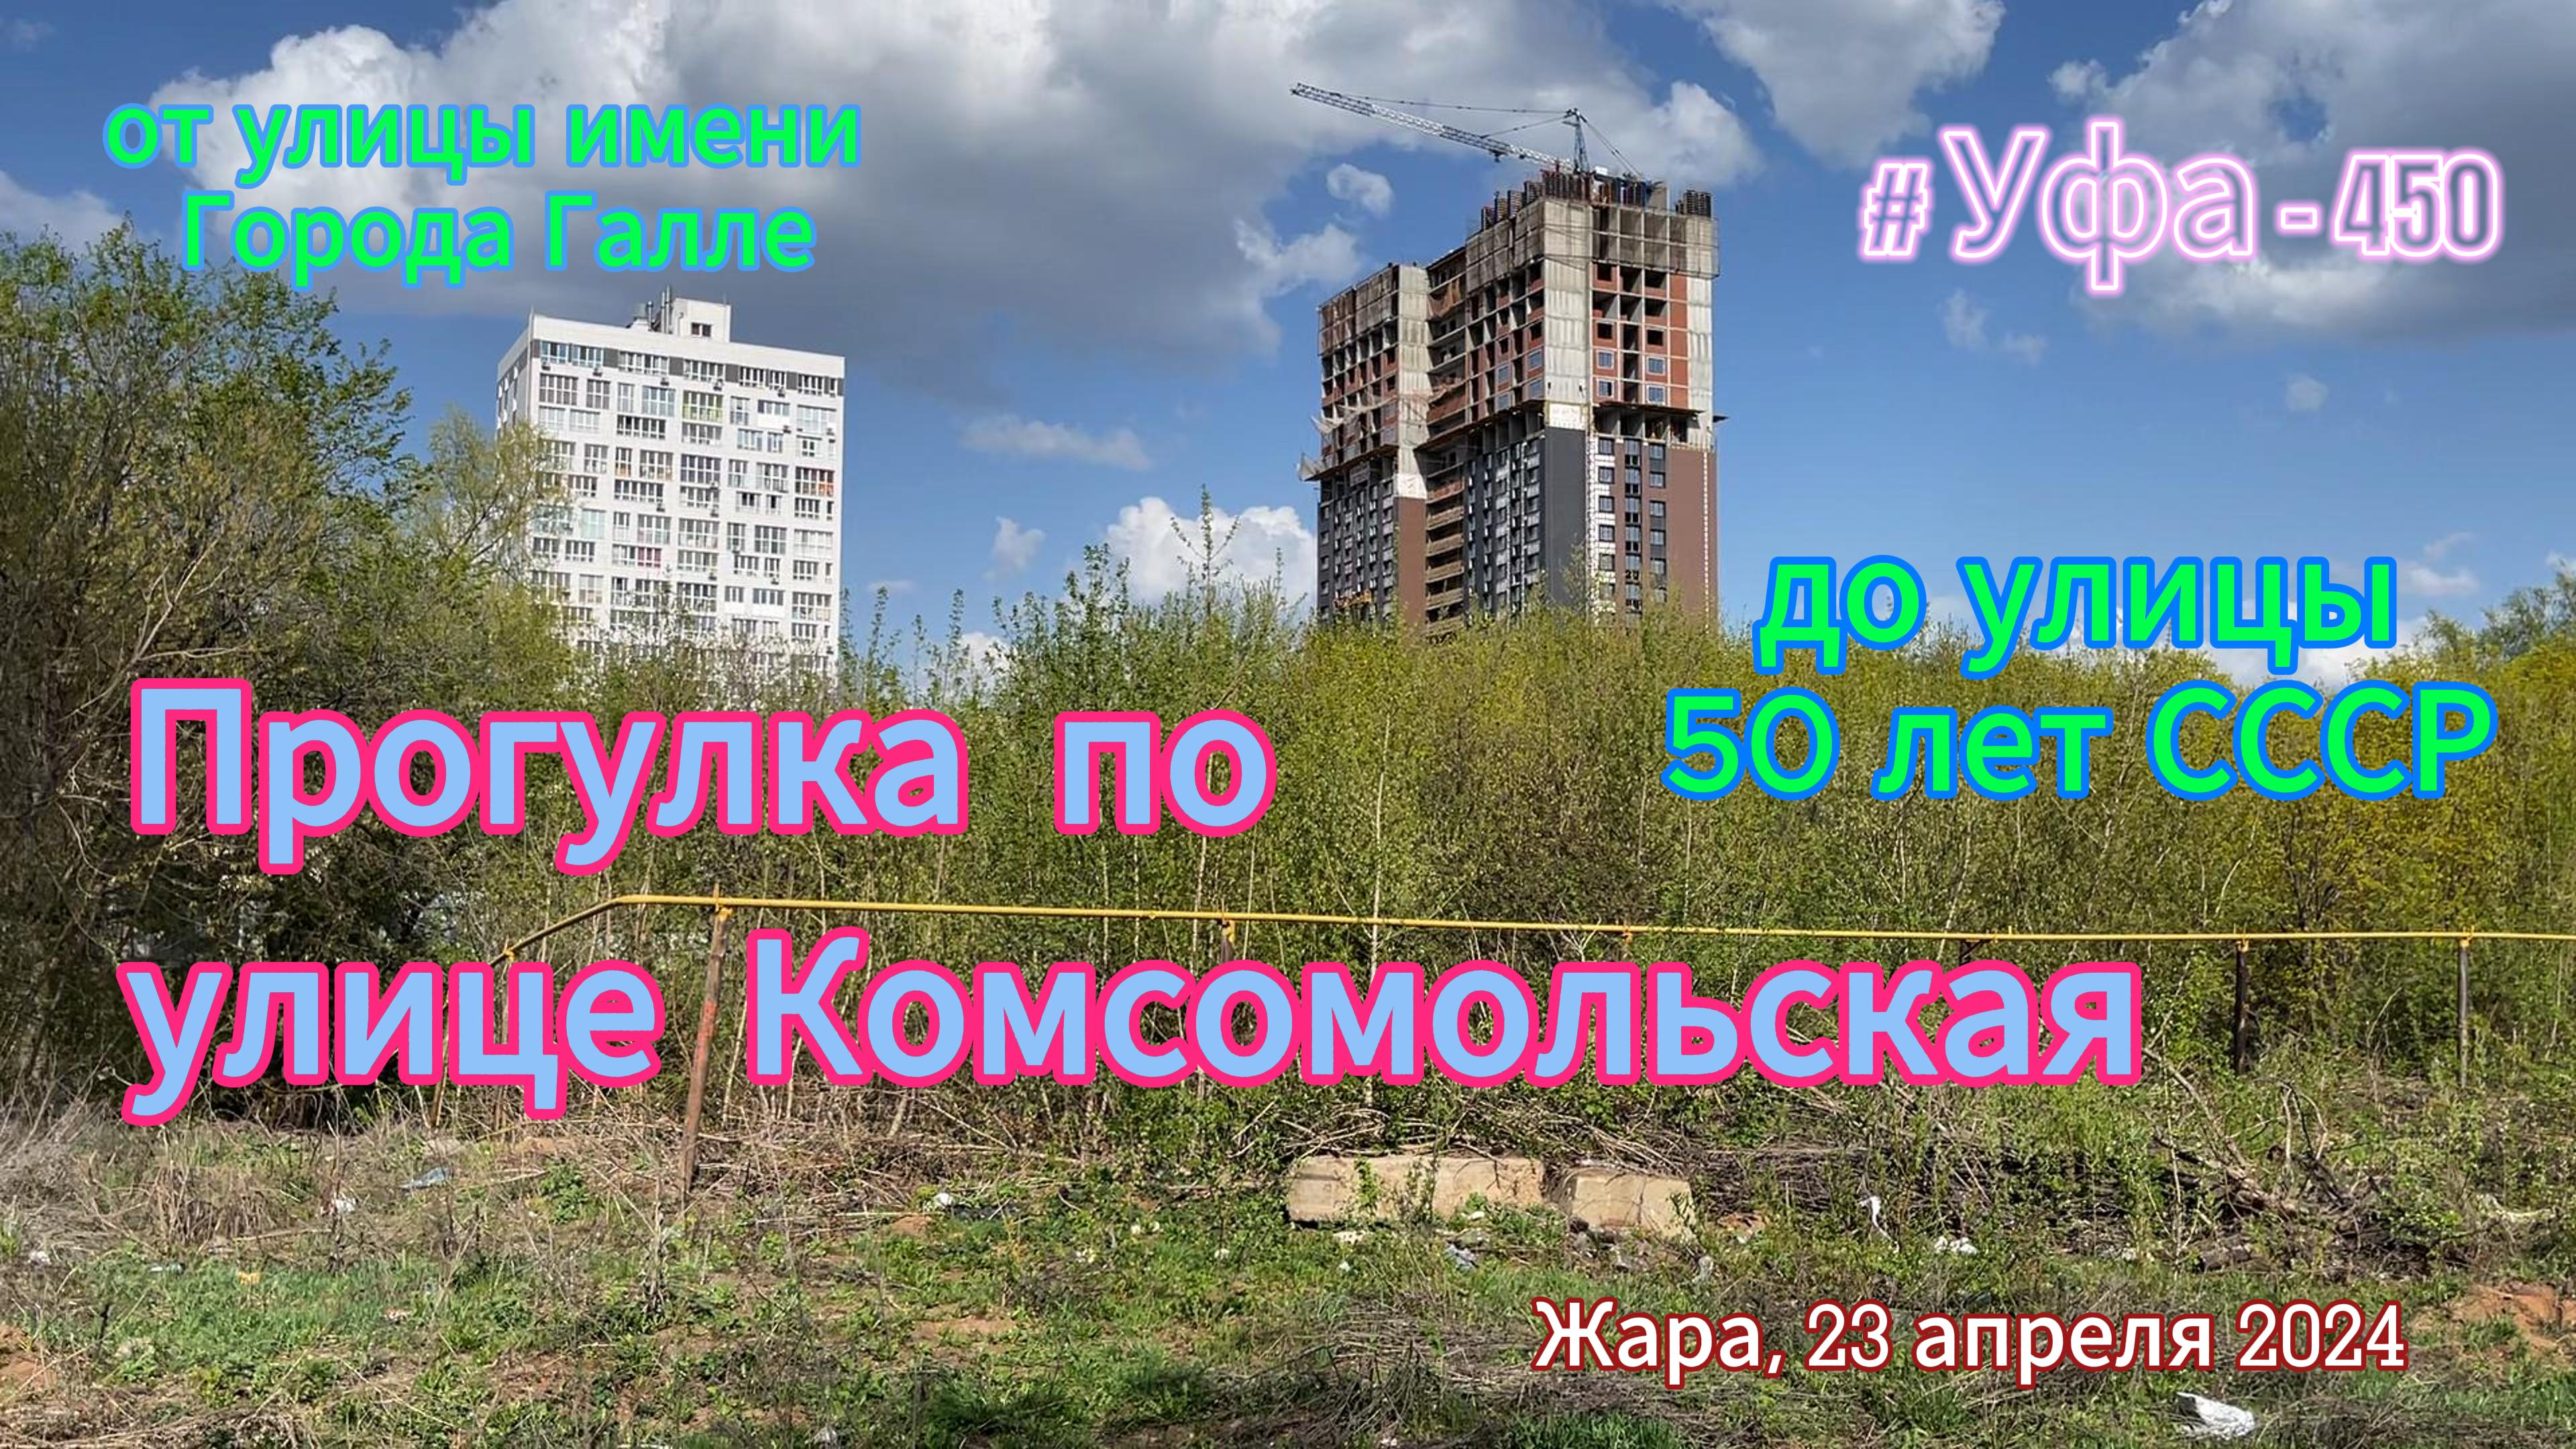 Уфа 450 лет. улица Комсомольская после долгого ремонта, весна 2024